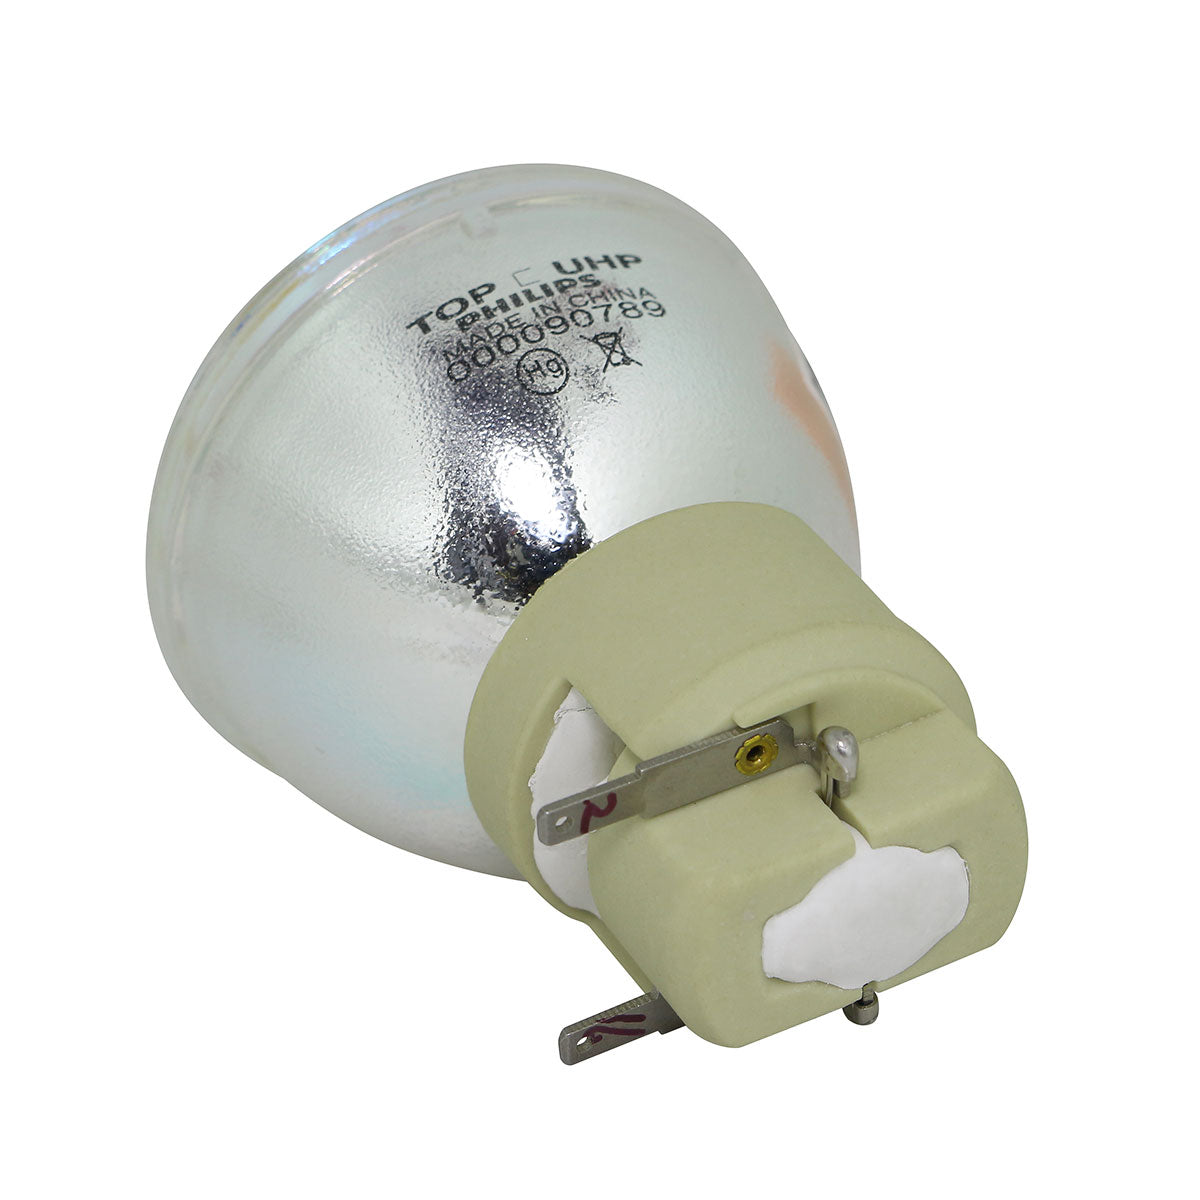 Promethean 5811116635-S Philips Projector Bare Lamp